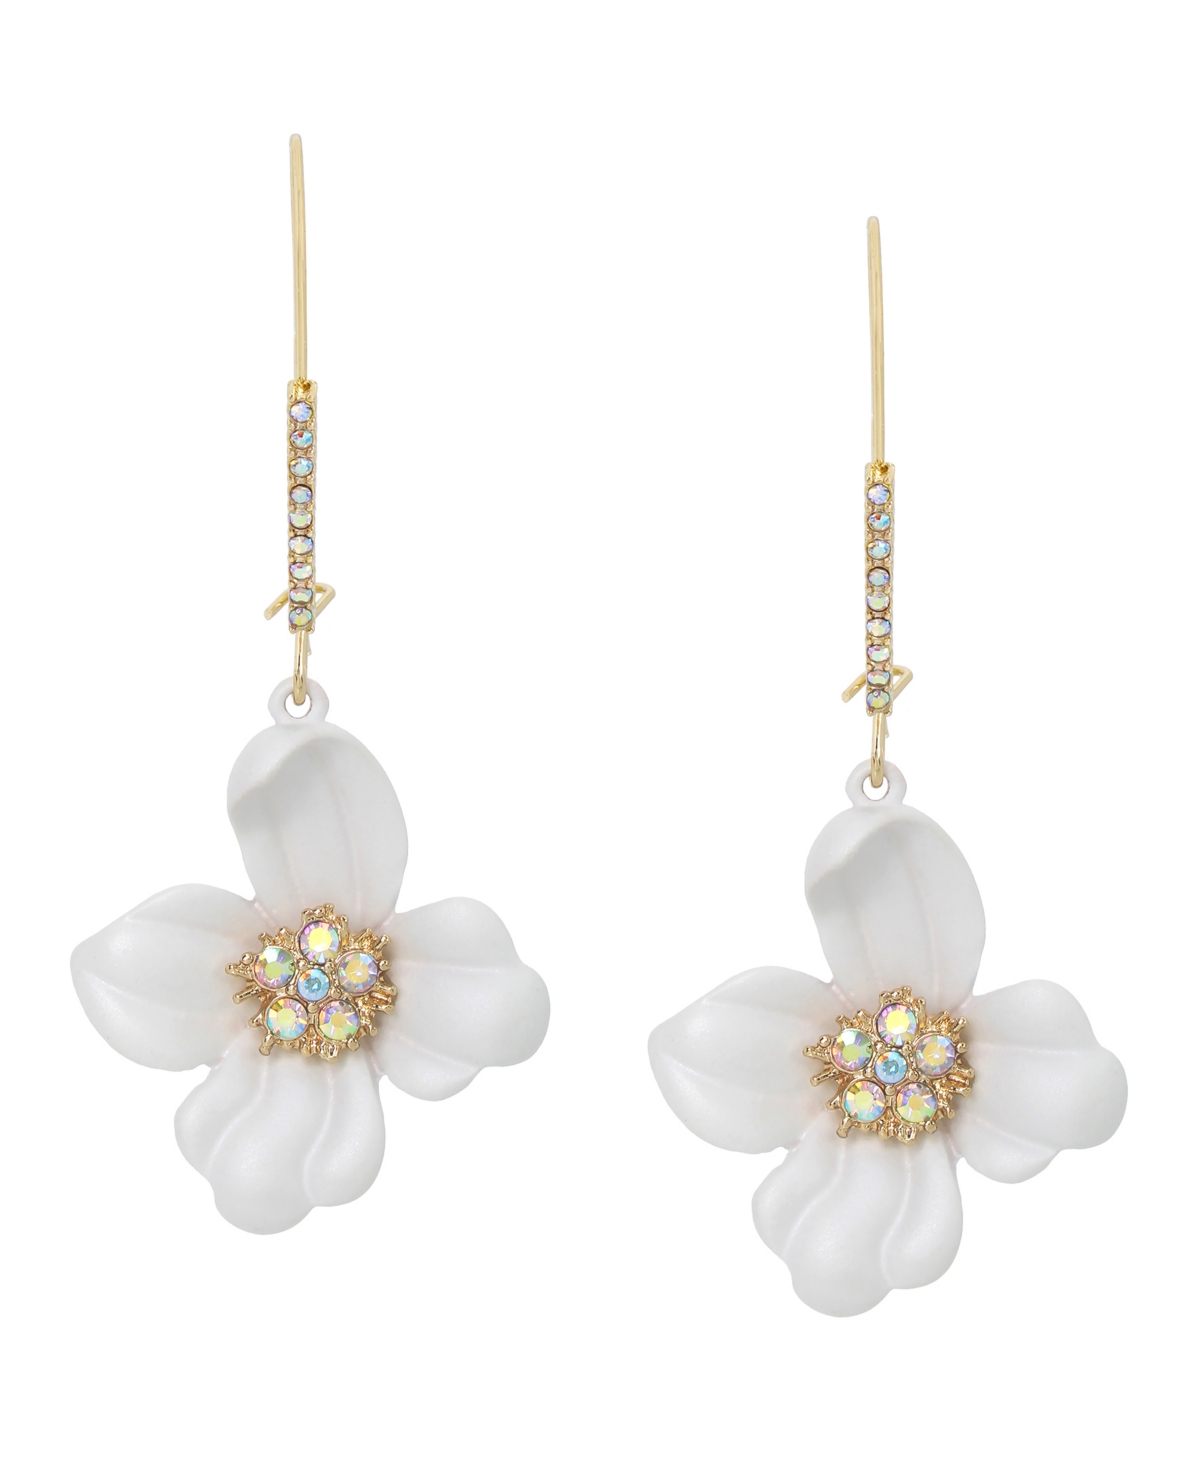 Faux Stone Flower Dangle Earrings - White, Gold